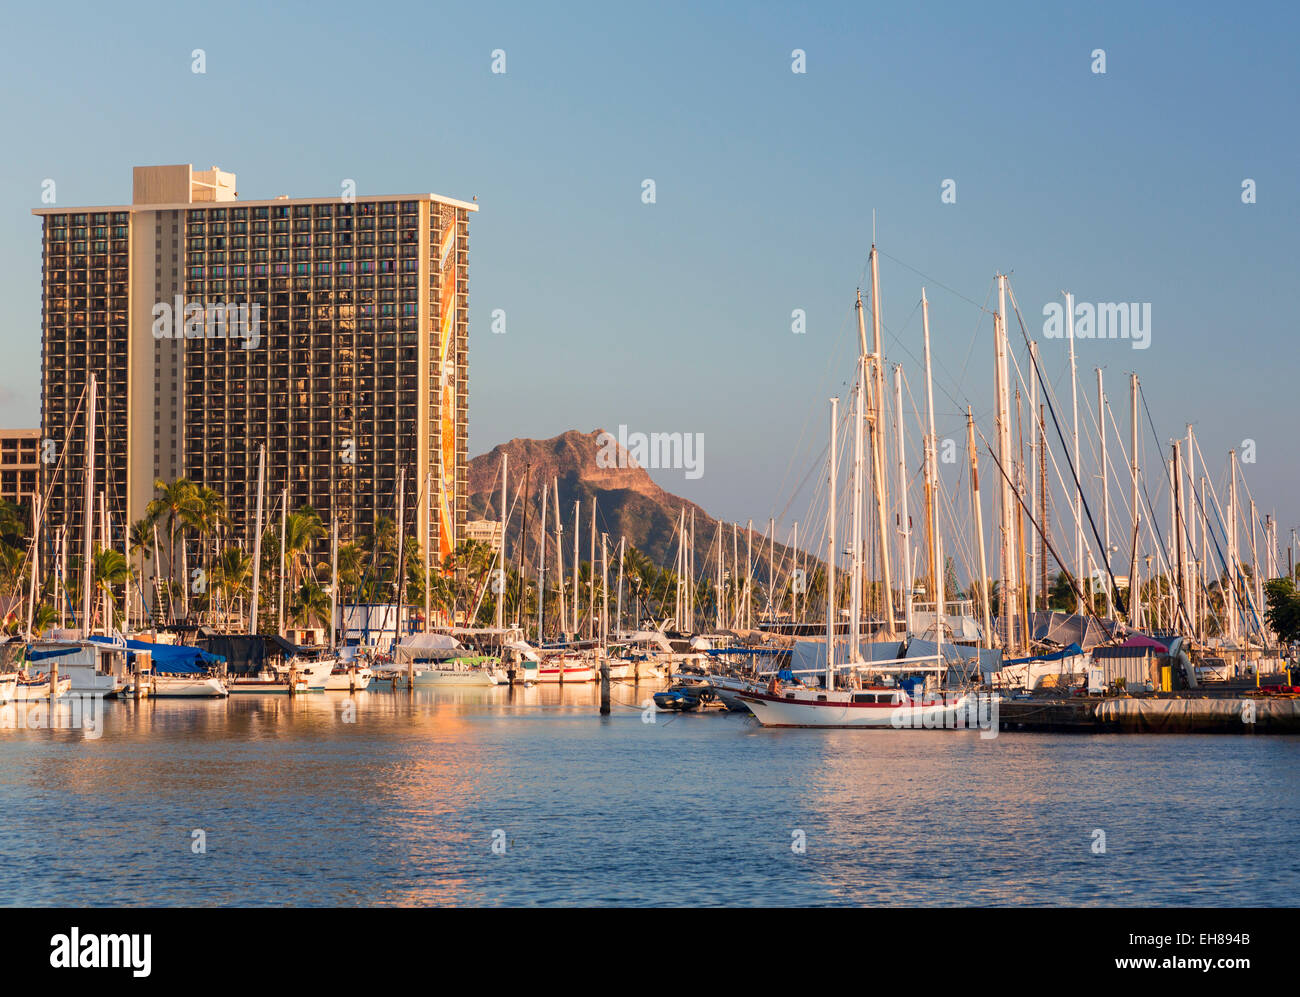 Waikiki, Hawaii, con veleros en el puerto de Ala Moana y el Hilton Hawaiian Village Resort detrás Foto de stock